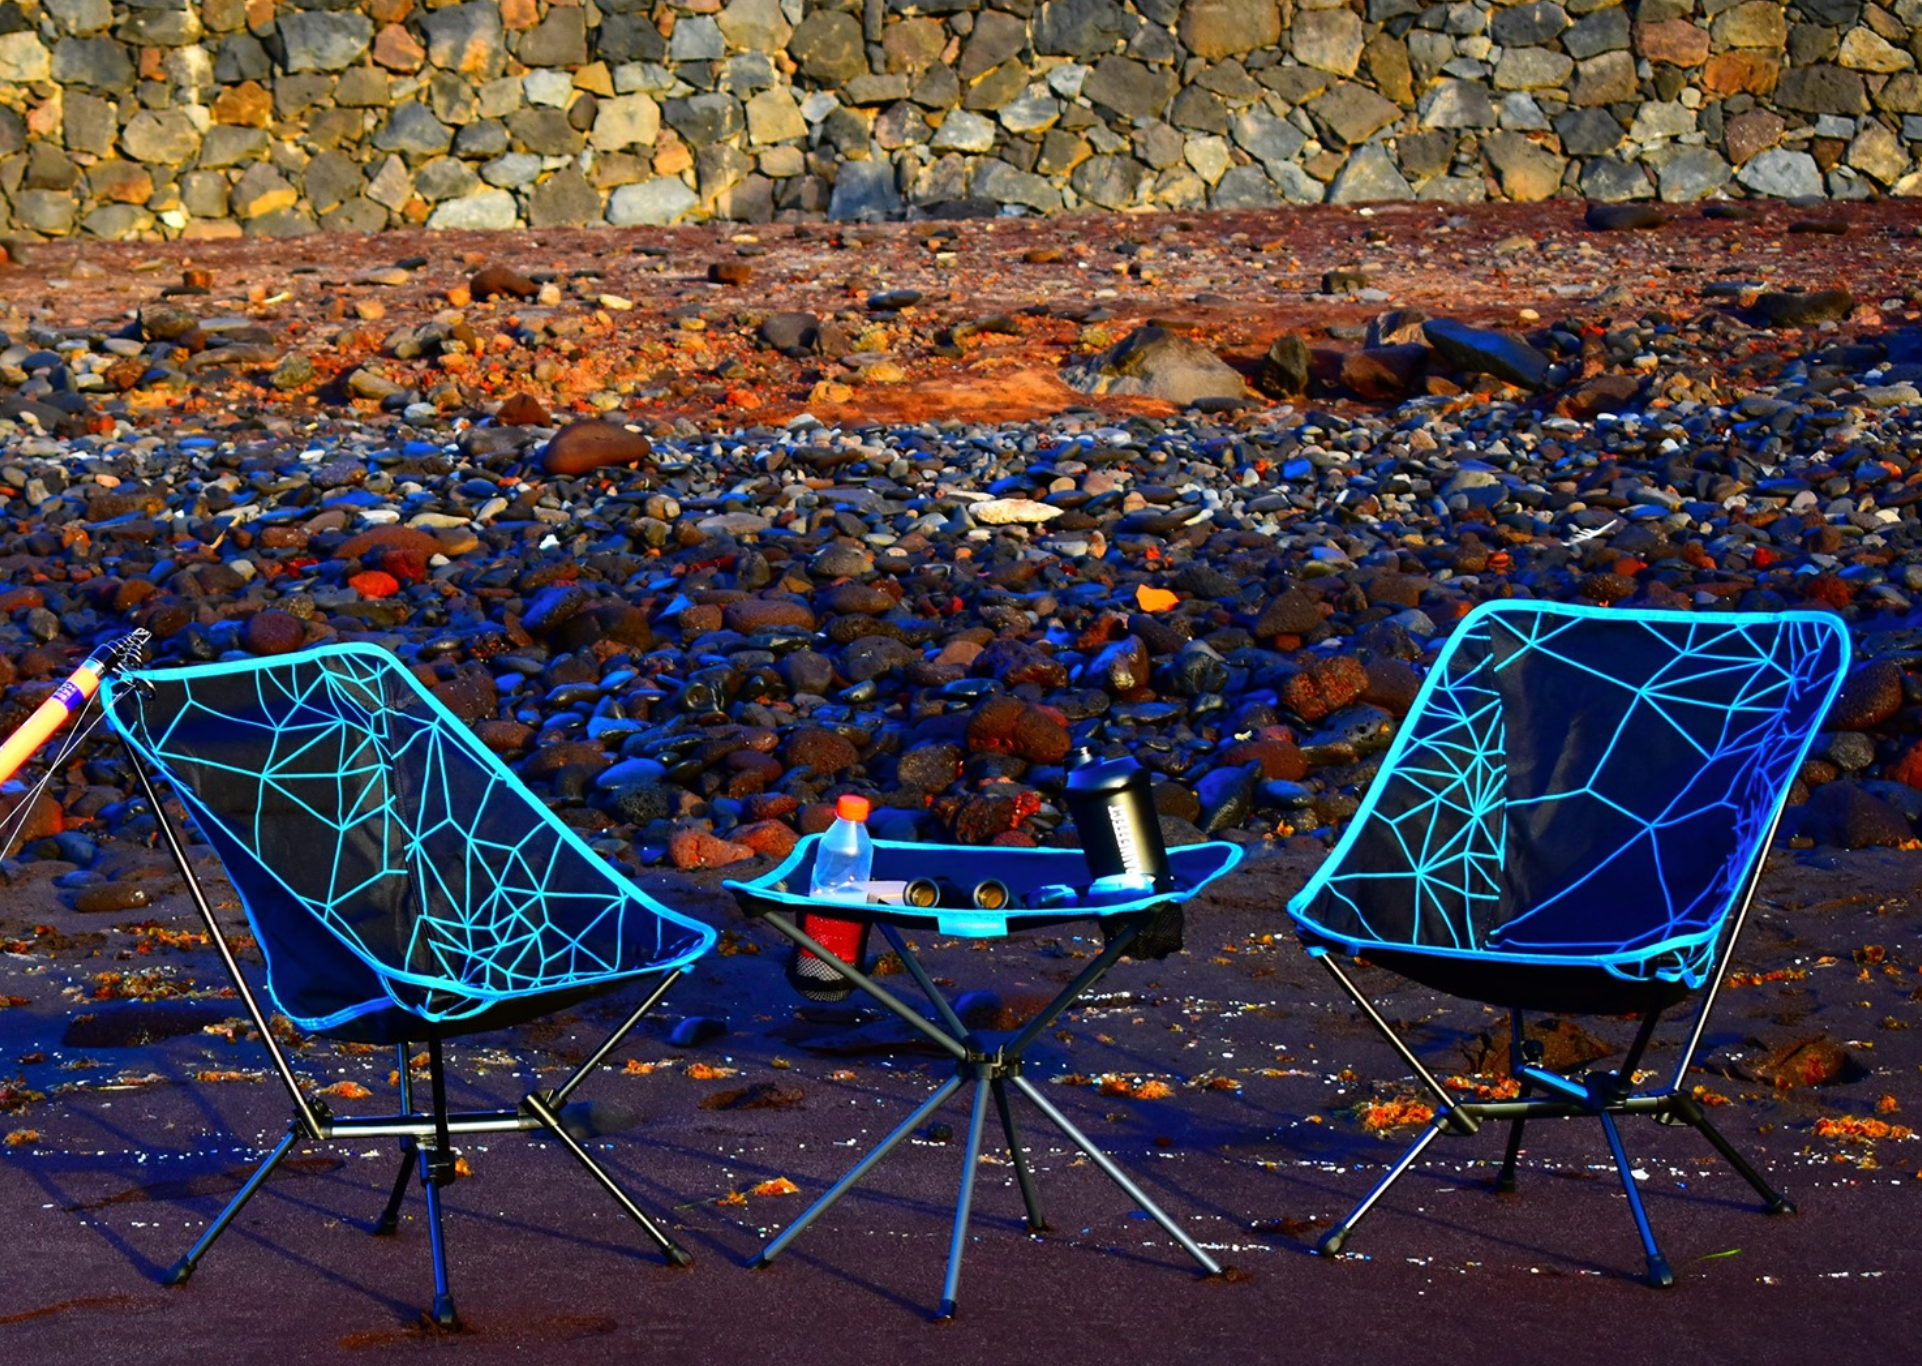 Portal Outdoor - Camping Chair - Malta